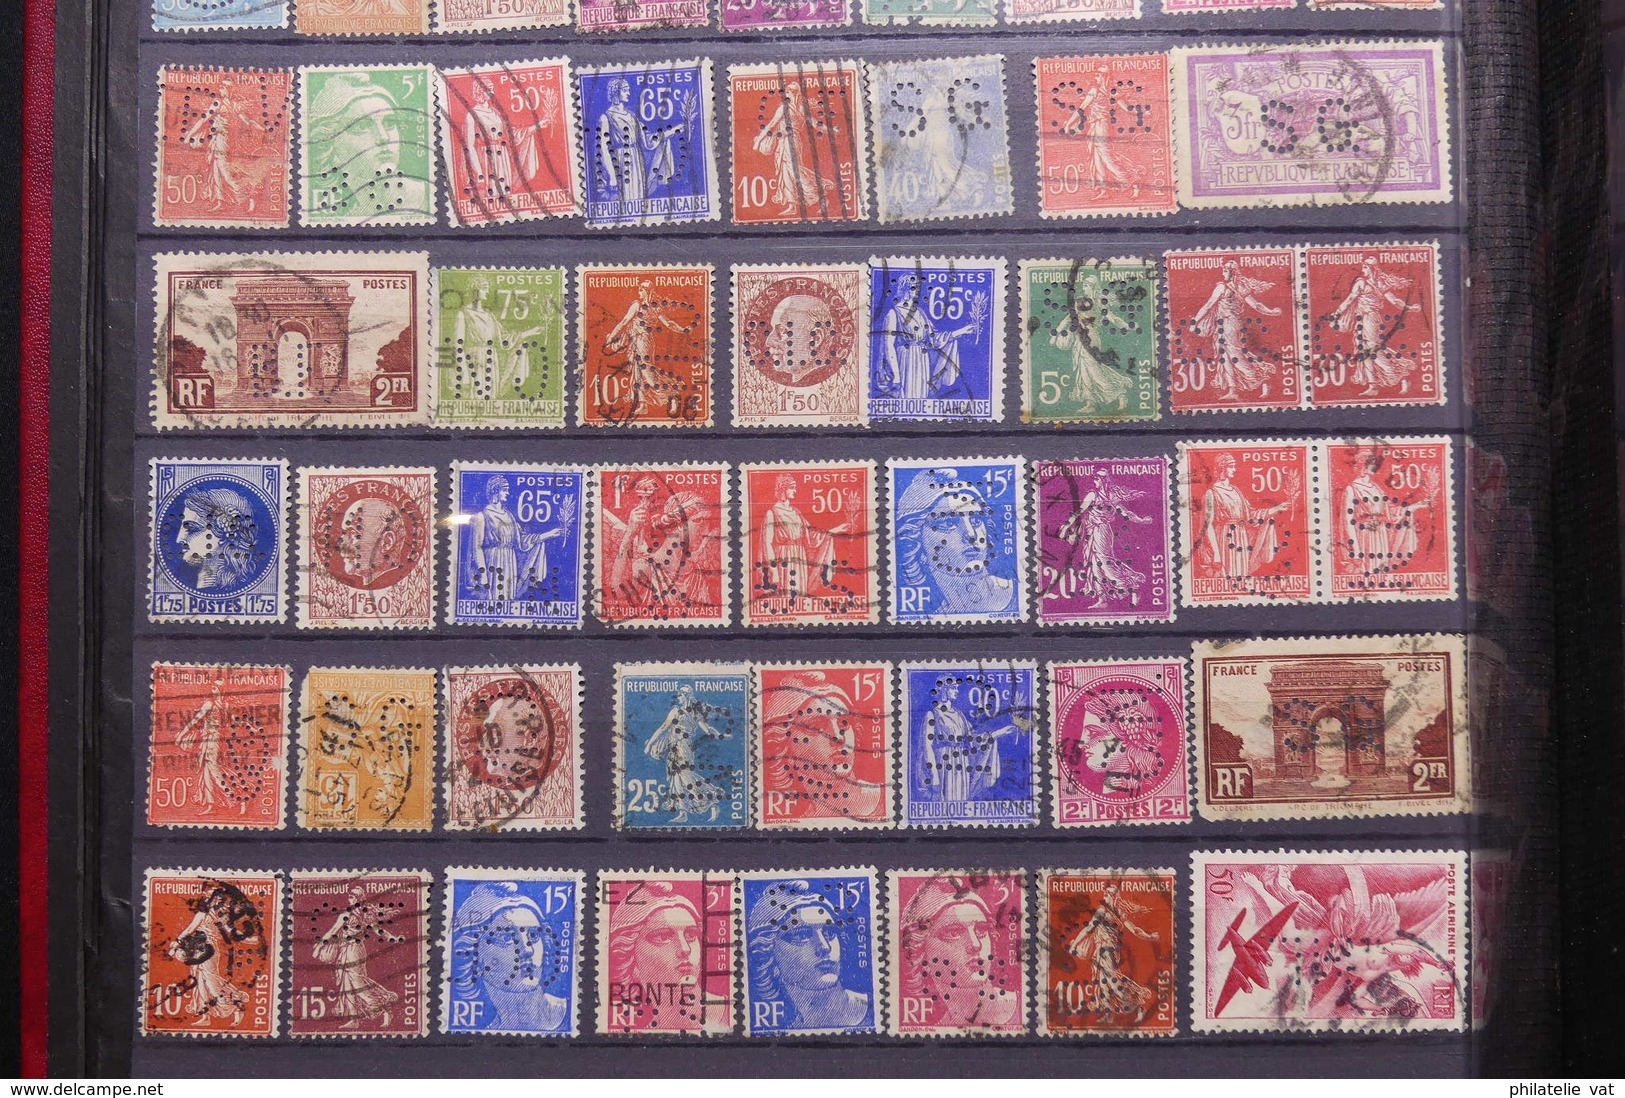 FRANCE - Album de timbres perforés - Plus de 600 pièces - A étudier - Nature - P 22663